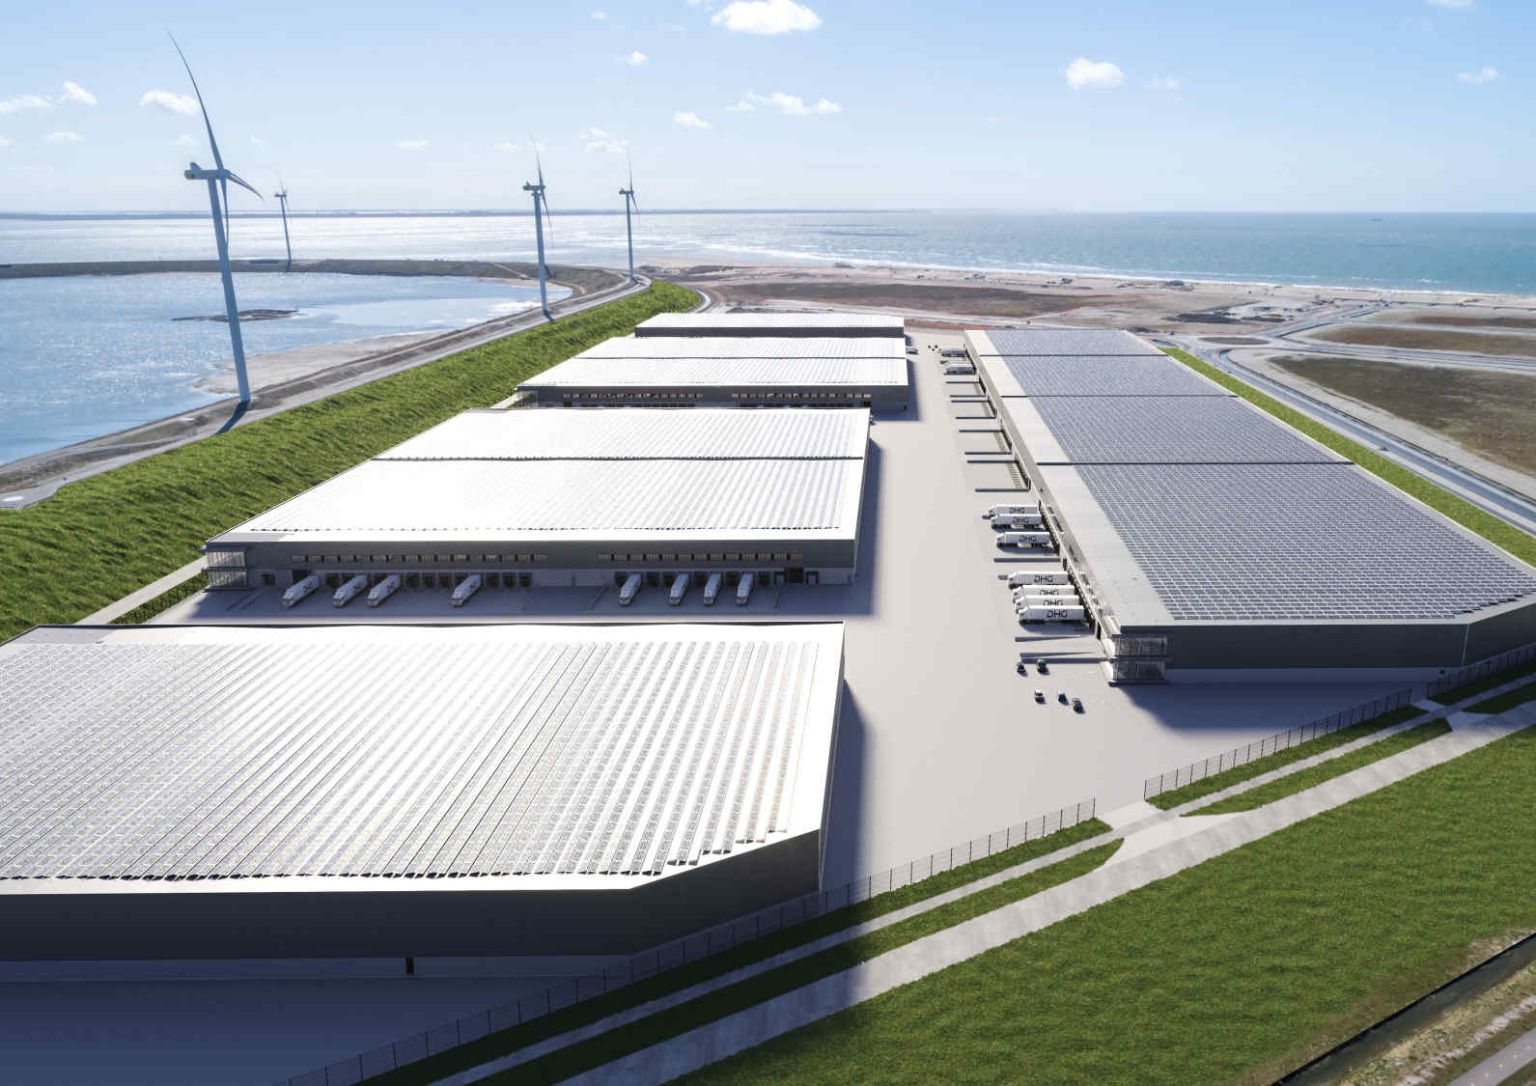 Patrizia investiert 230 Millionen Euro in Distributionszentrum in Rotterdam